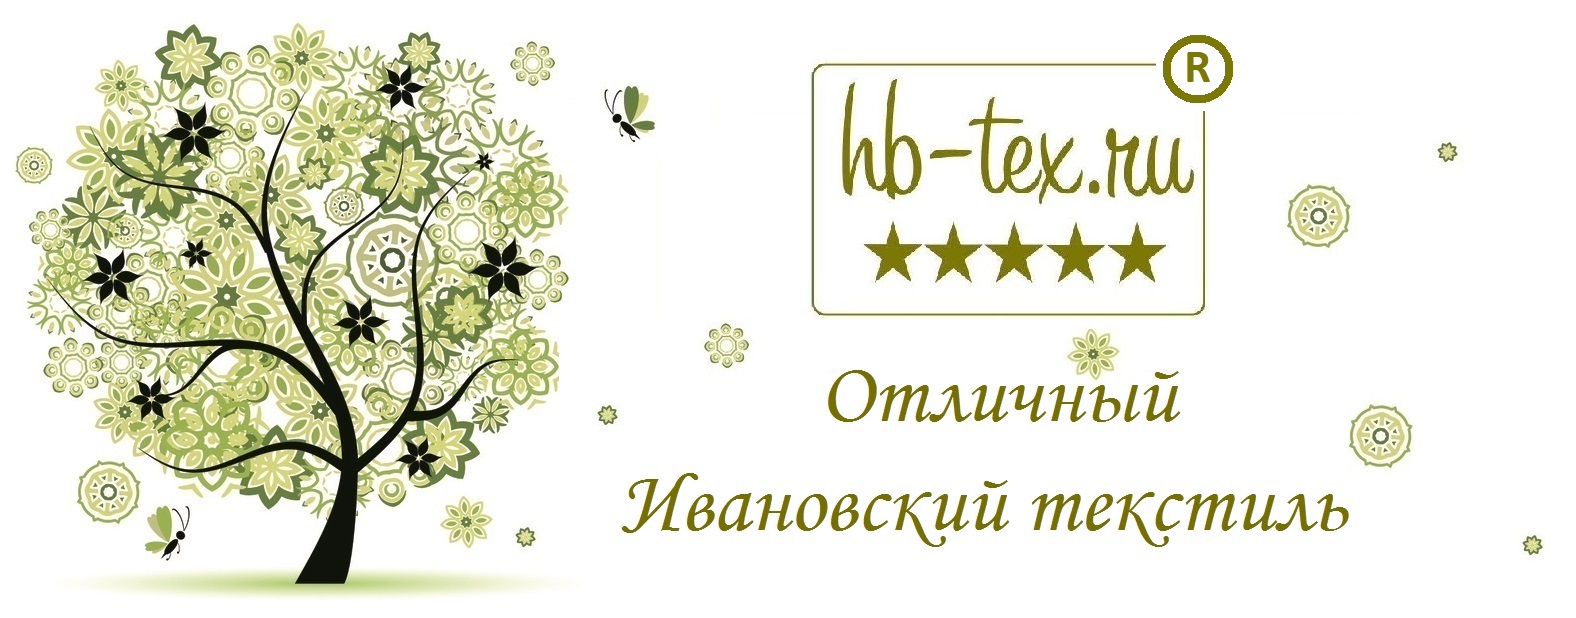 Hb-tex.ru